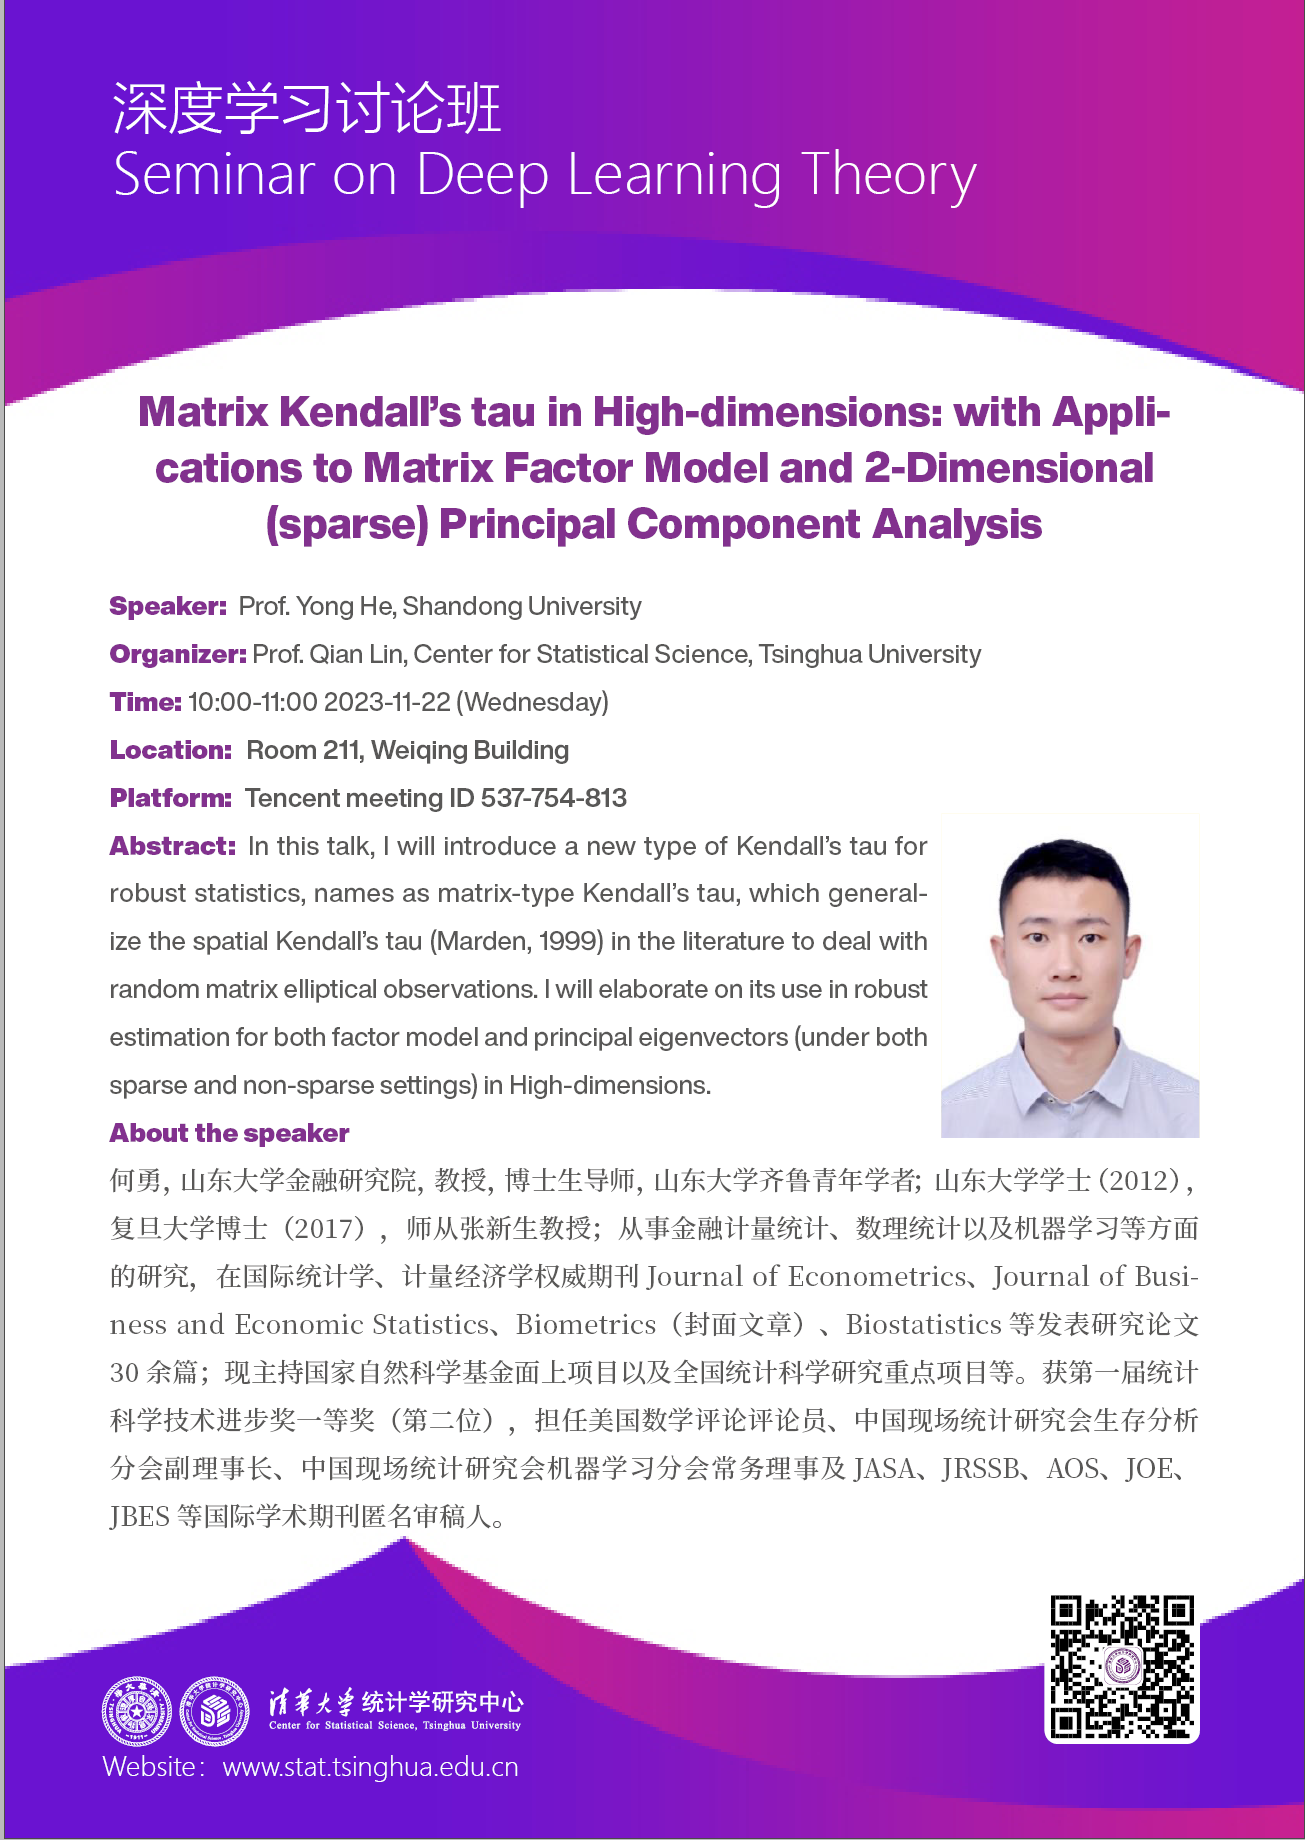 【深度学习讨论班】Matrix Kendal’s tau in High-dimensions: with Applications to Matrix Factor Model and 2-Dimensiona(sparse) Principal Component Analysis